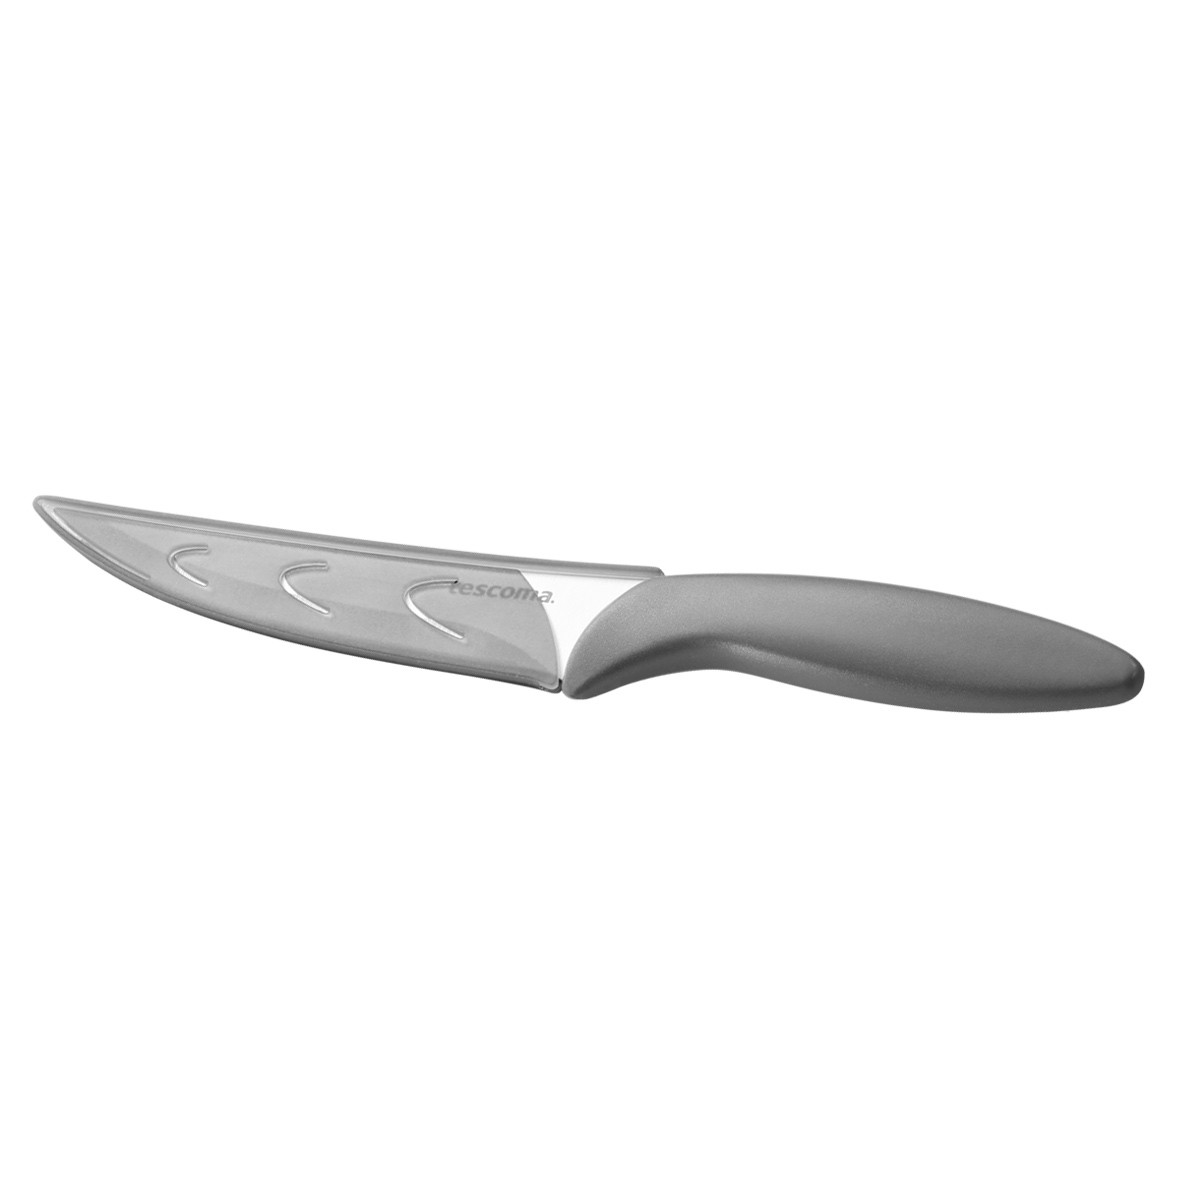 Nůž univerzální MOVE 12 cm, s ochranným pouzdrem